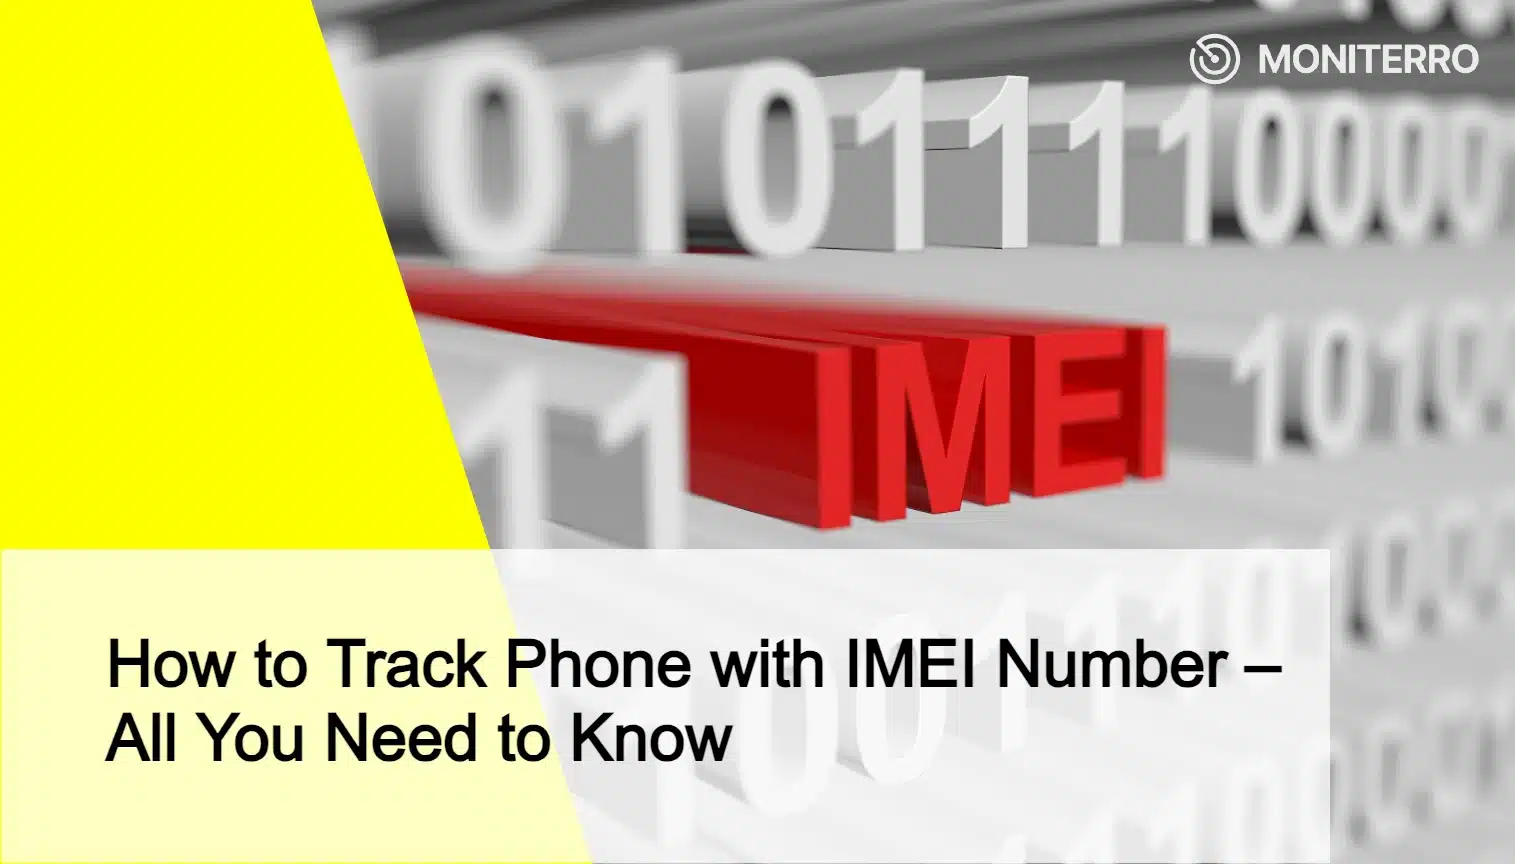 IMEI Numarası ile Telefon Takibi Nasıl Yapılır - Bilmeniz Gereken Her Şey